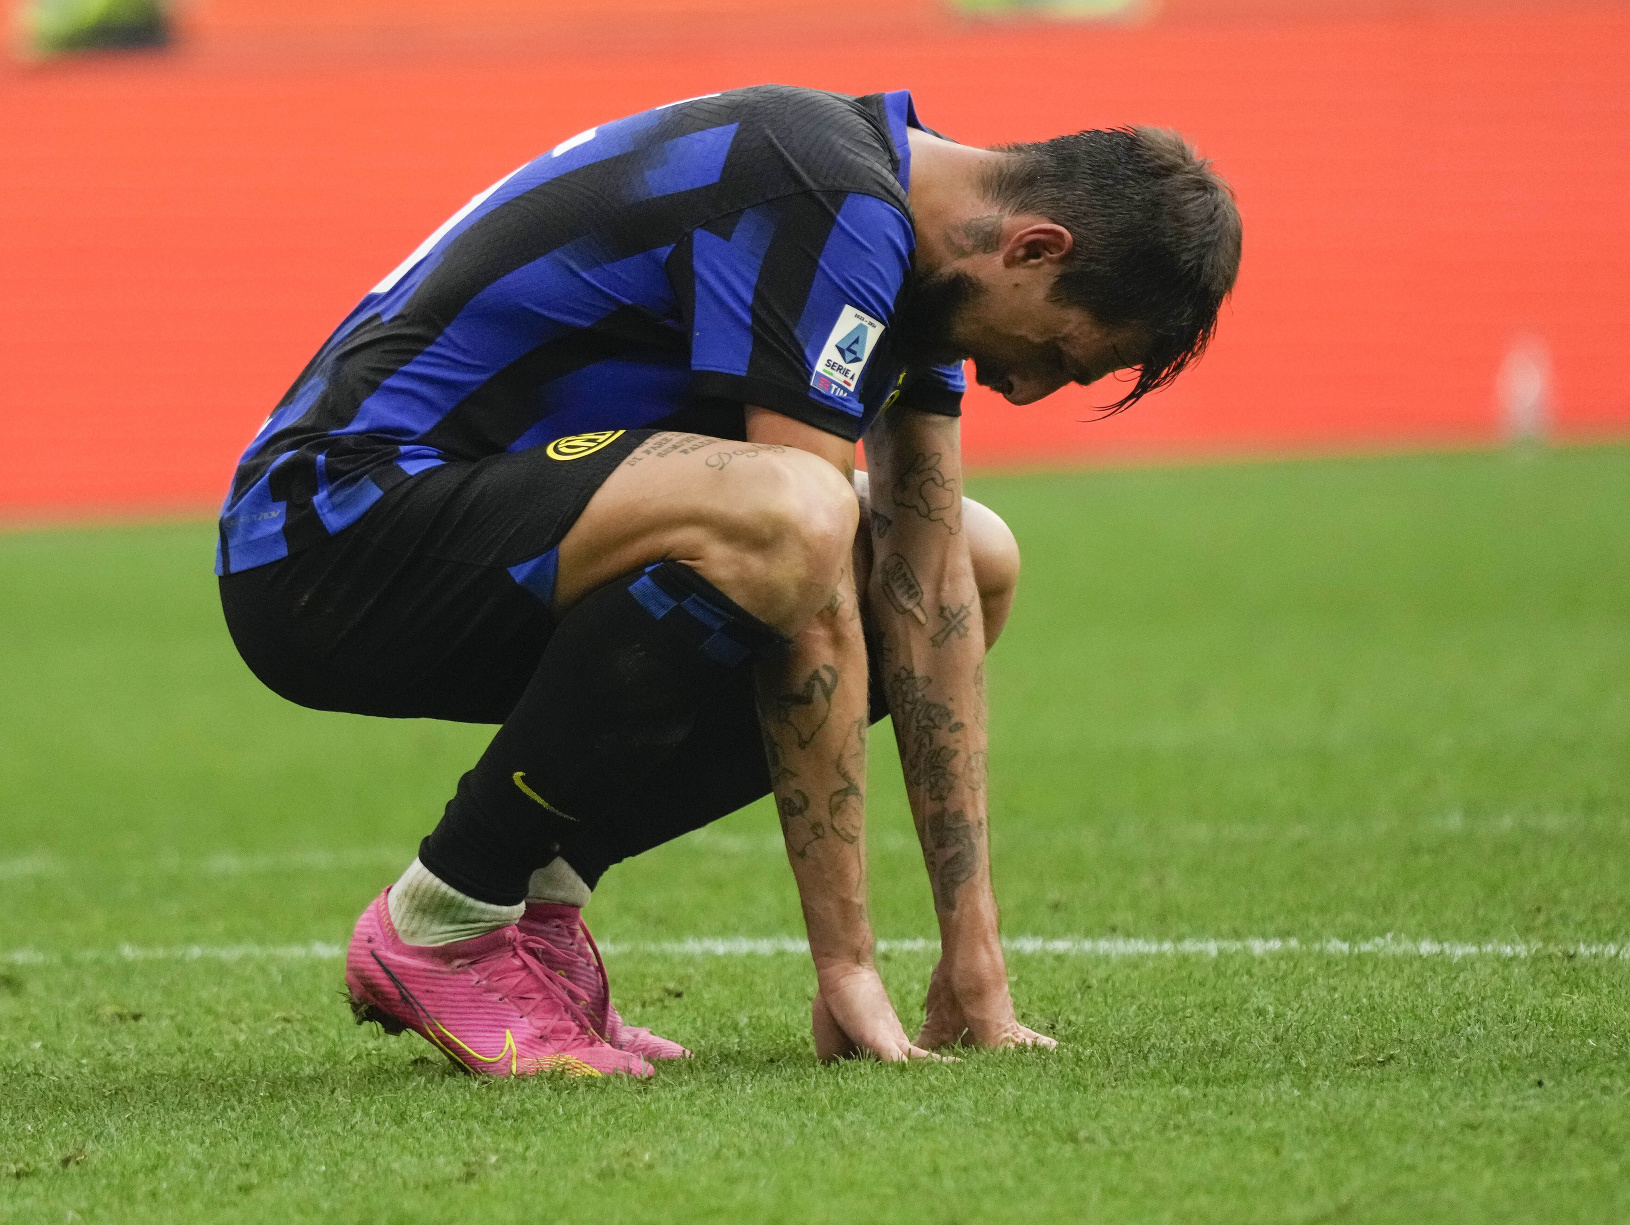 Taliansky obranca Interu Miláno